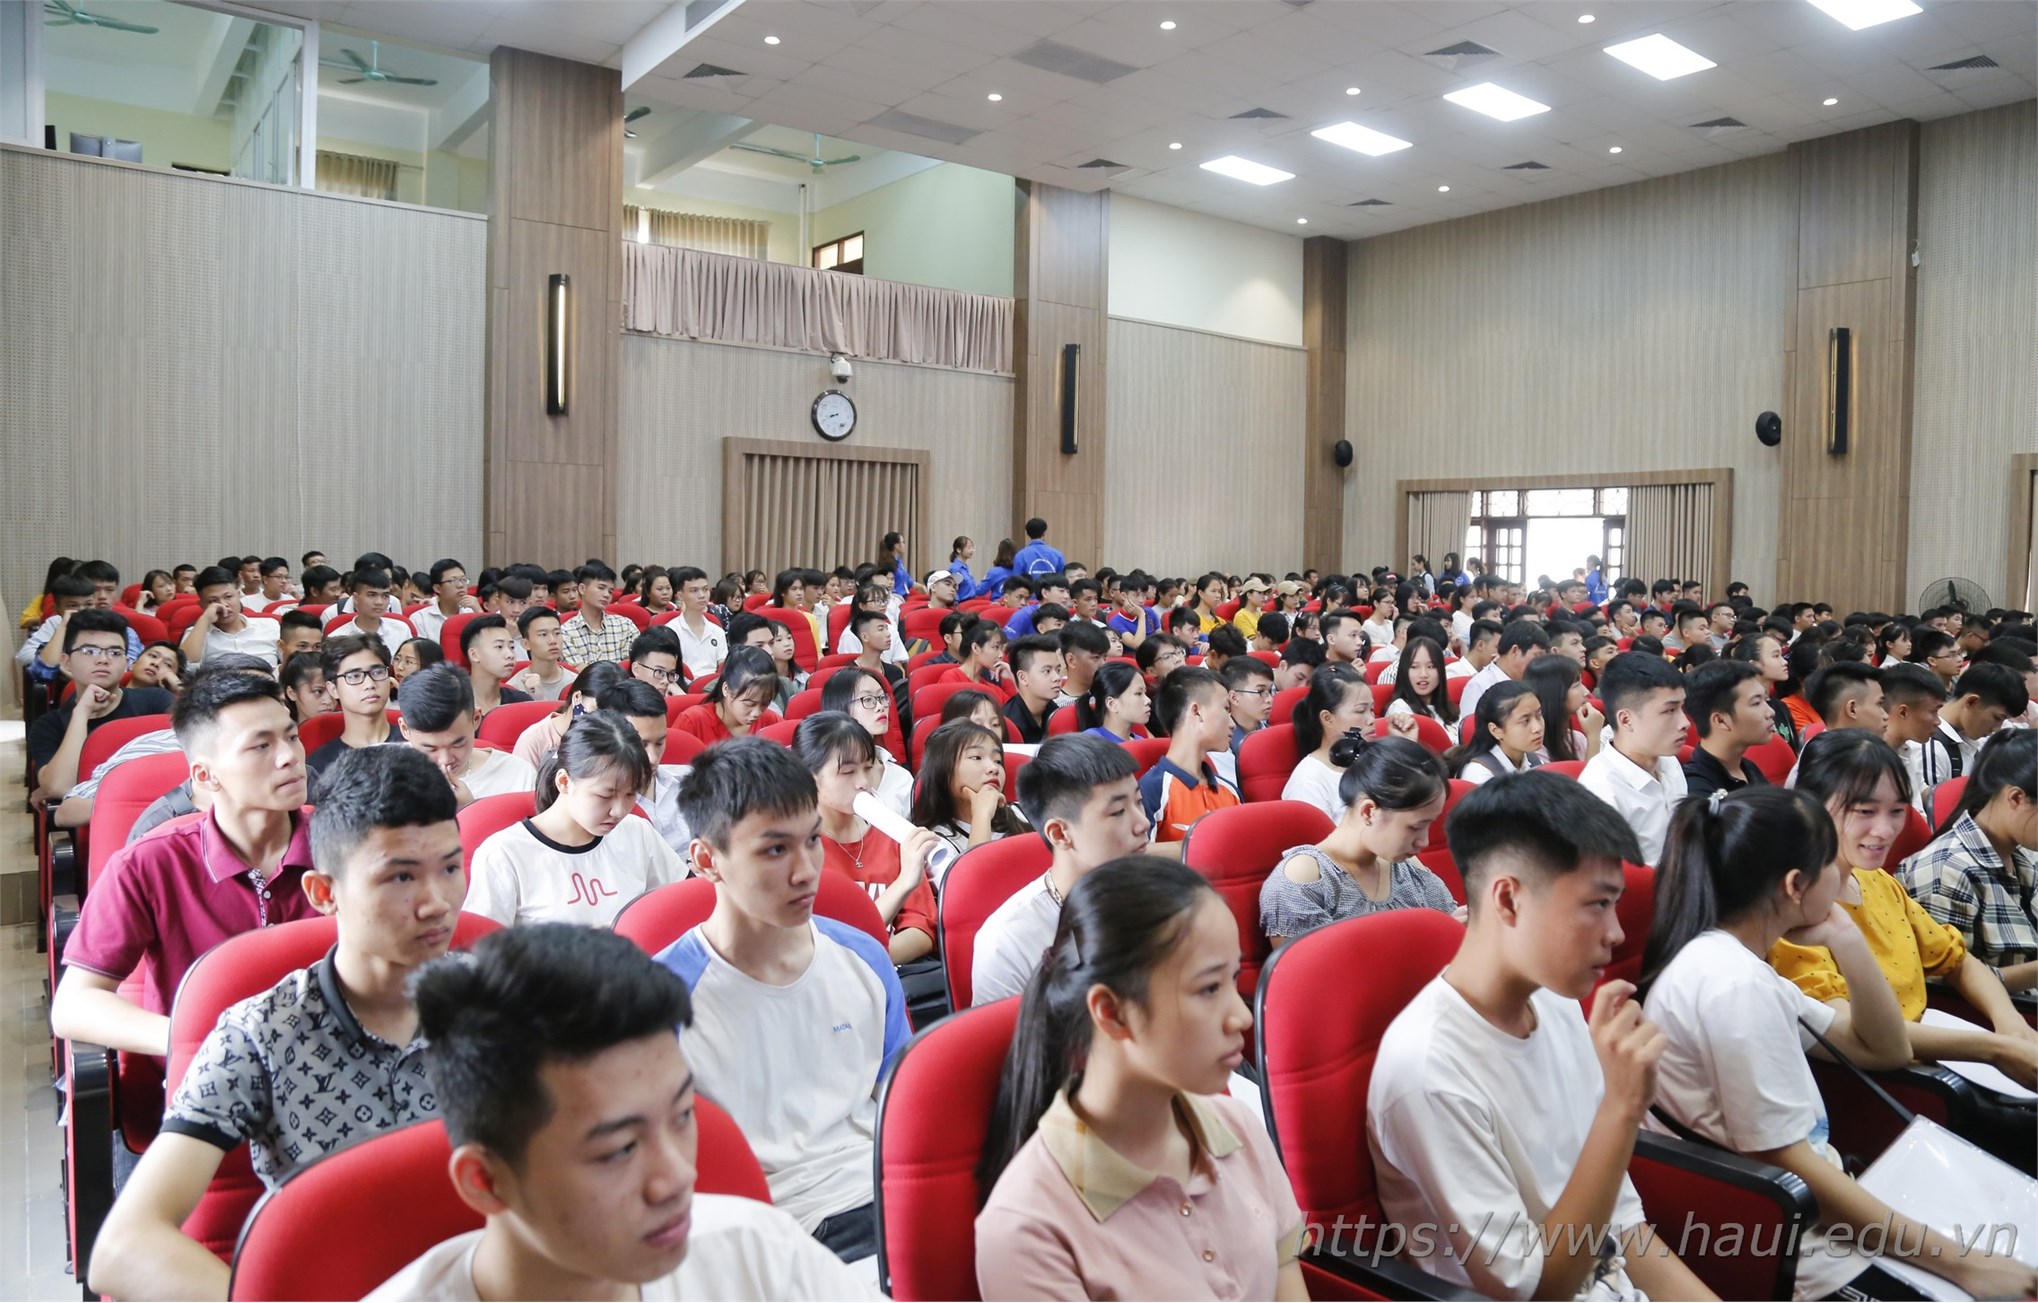 Thí sinh xác nhận nhập học tại Đại học Công nghiệp Hà Nội 2019